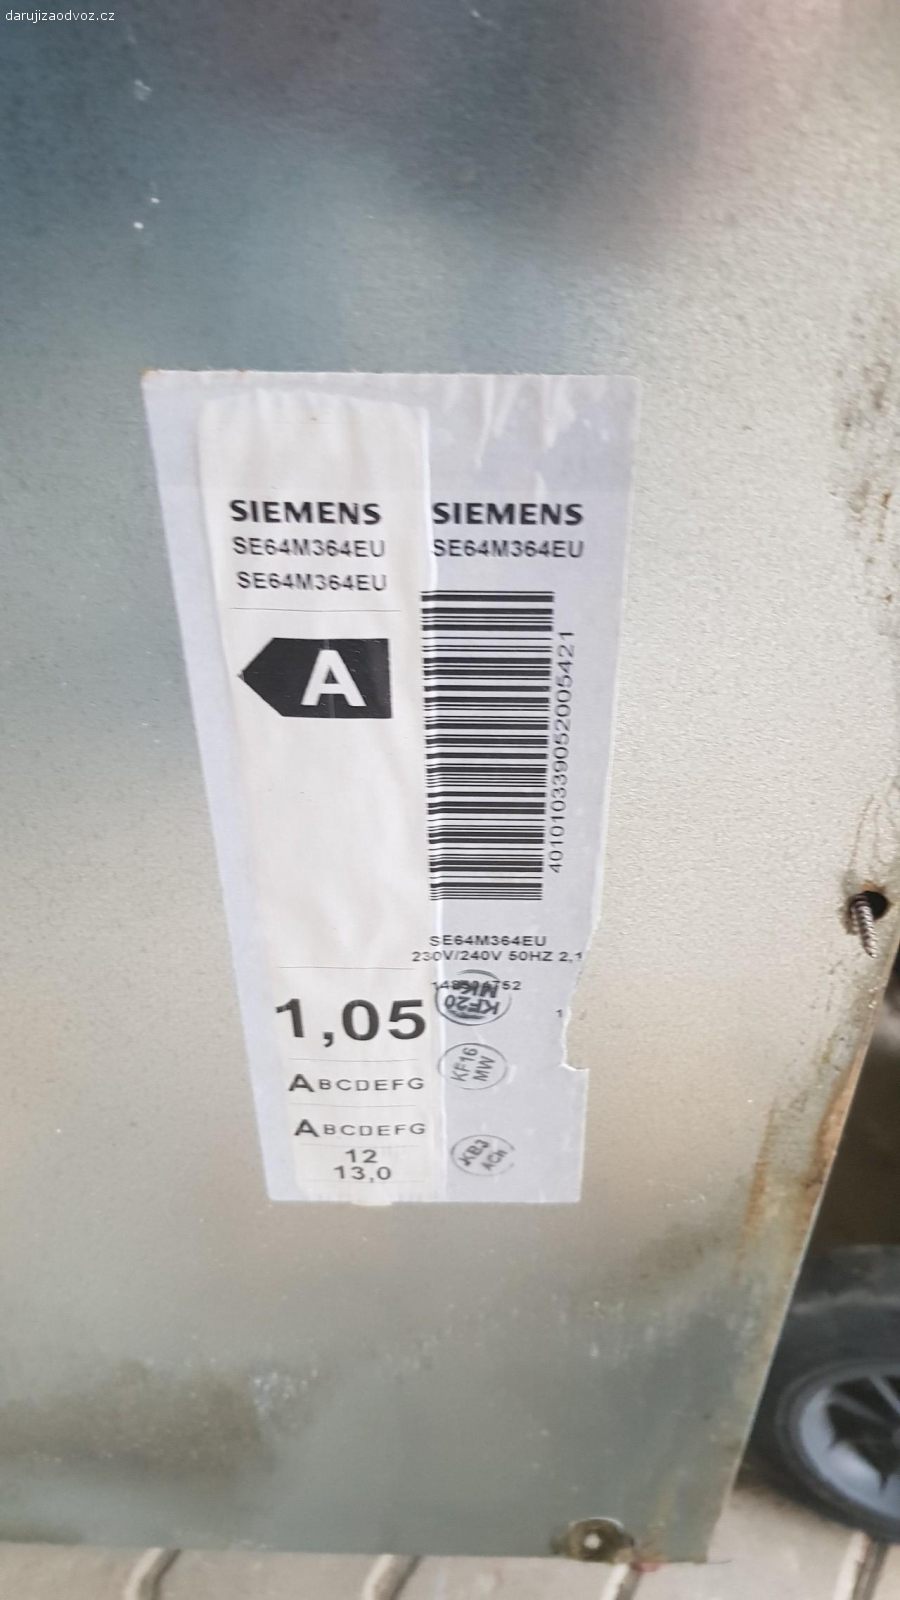 Vestavná myčka Siemens. R.v.2011, funkční, nevypíná vypouštěcí čerpadlo = neposouvá se program.